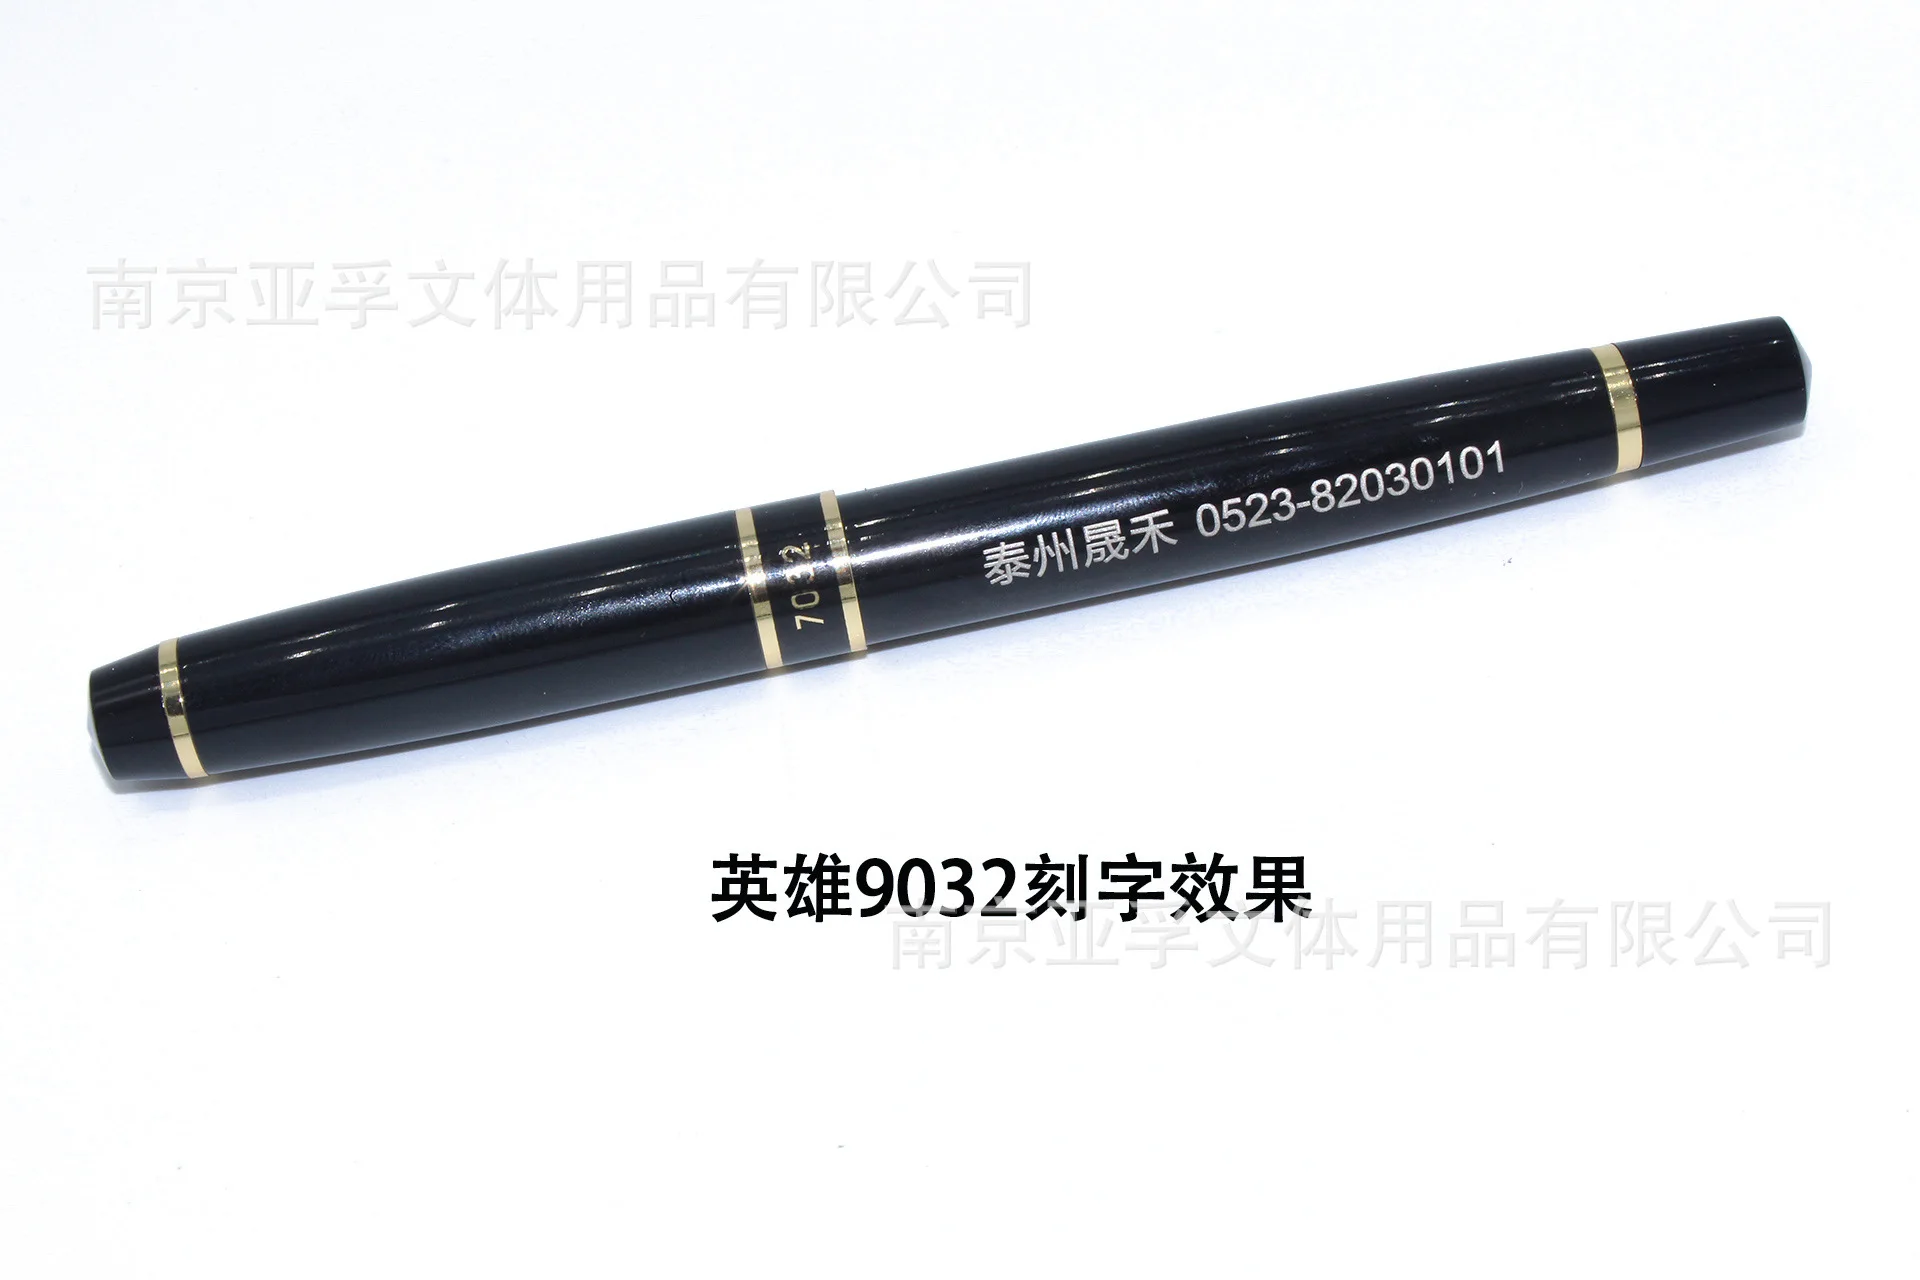 Hero авторучка 7032 черная Liya высококачественная металлическая ручка/Фирменная роликовая ручка напрямую с фабрики оптом и в розницу настраиваемая